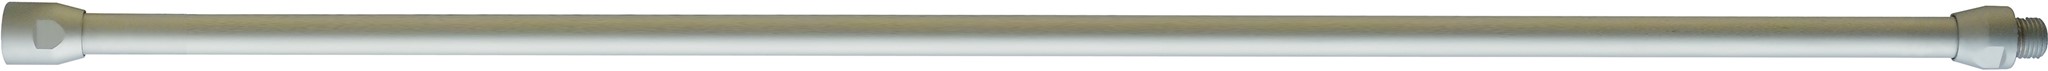 Bild von Verlängerungsrohr für Blaspistolen,Alu, gebogen800mm, M12x1,25mm, EWO